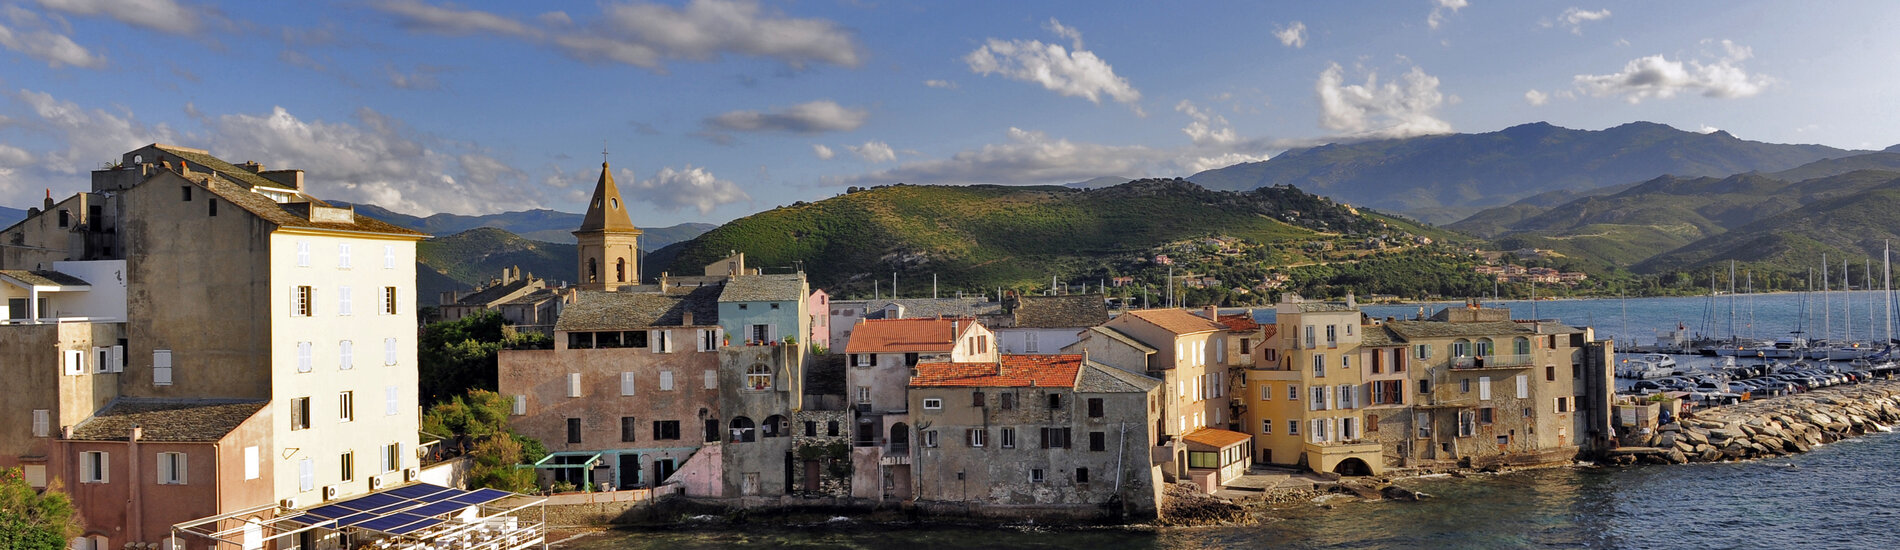 Bus-rondreis, 11 dagen Corsica en Sardinië 